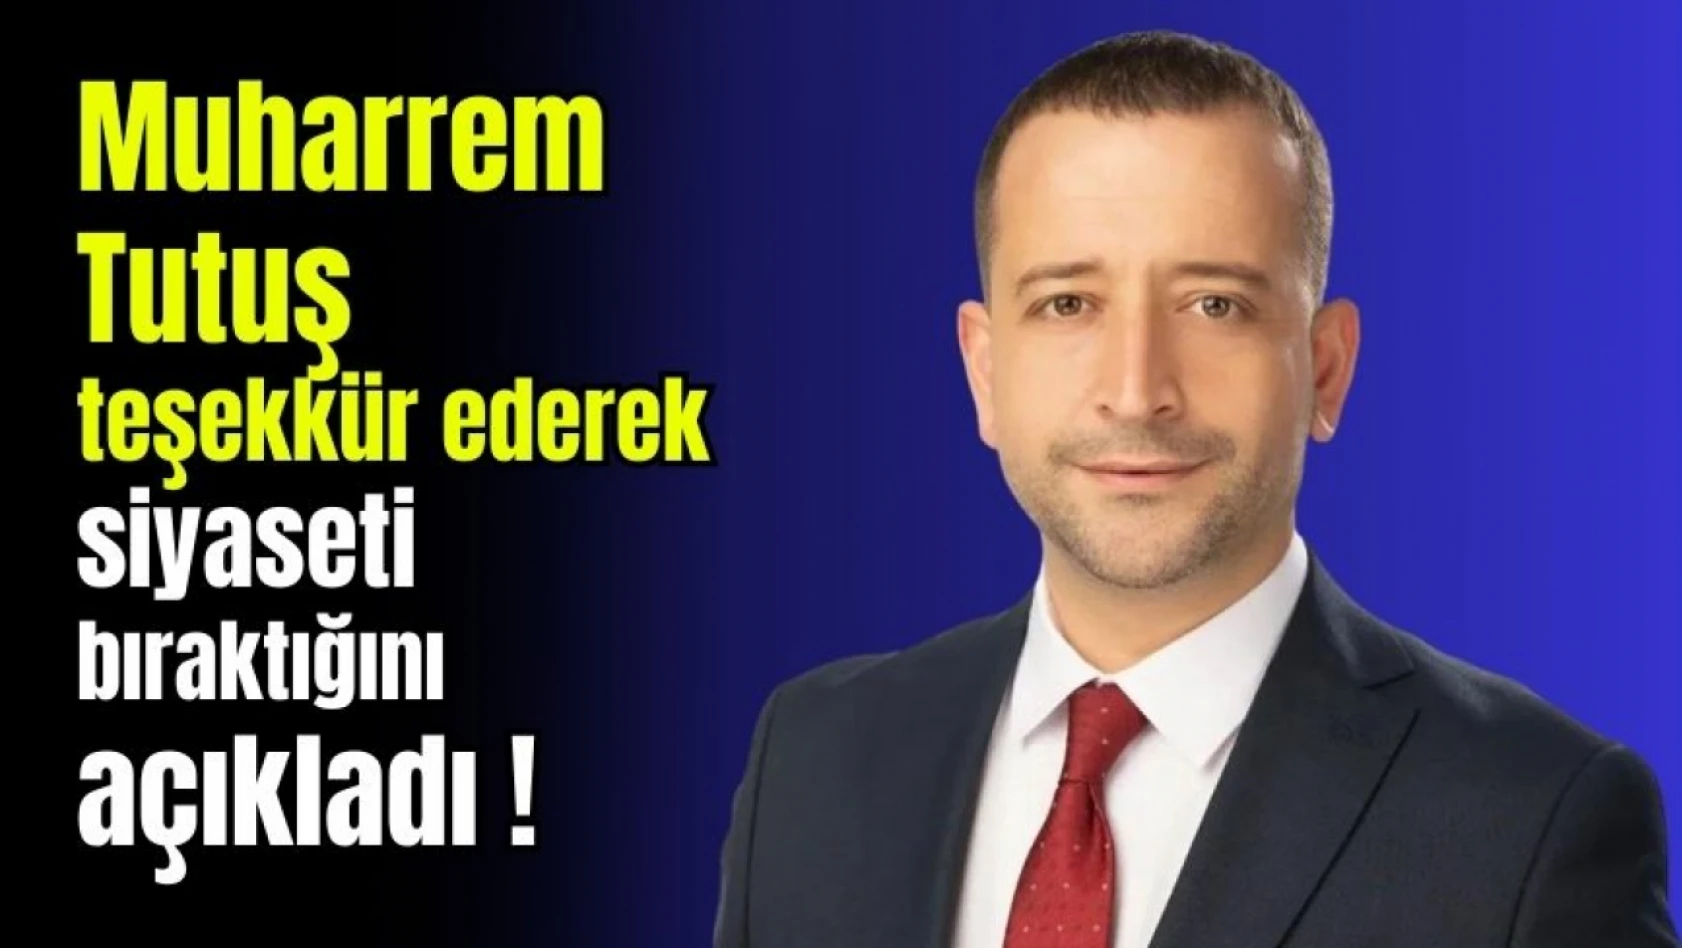 Muharrem Tutuş teşekkür ederek siyaseti bıraktığını açıkladı !